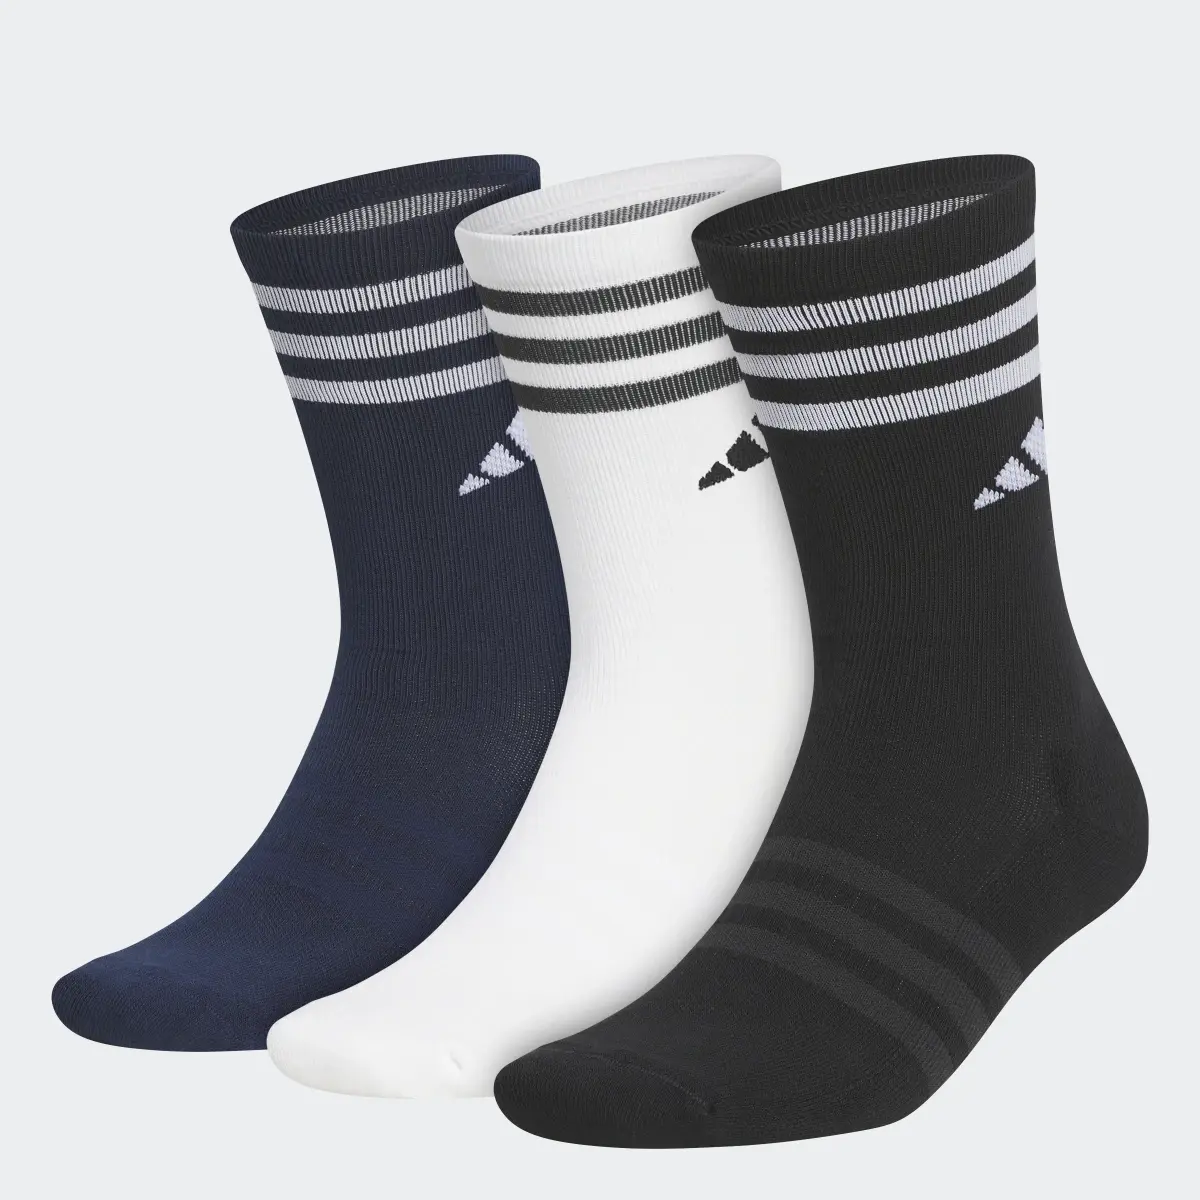 Adidas Crew Socks 3 Pairs. 1